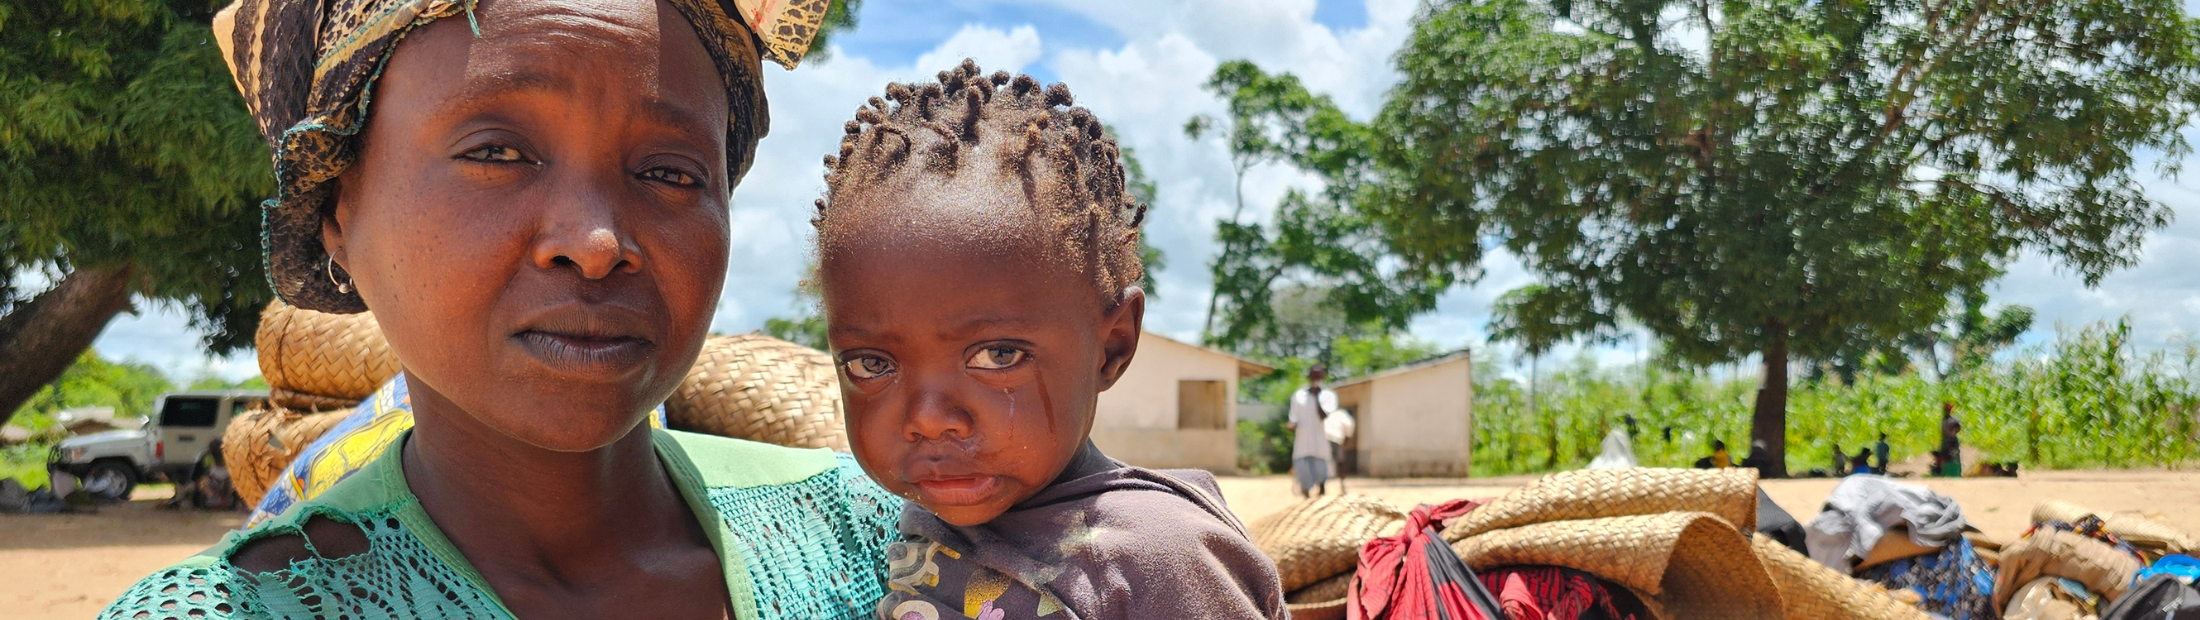 Moçambique: a emergência invisível que precisa de si